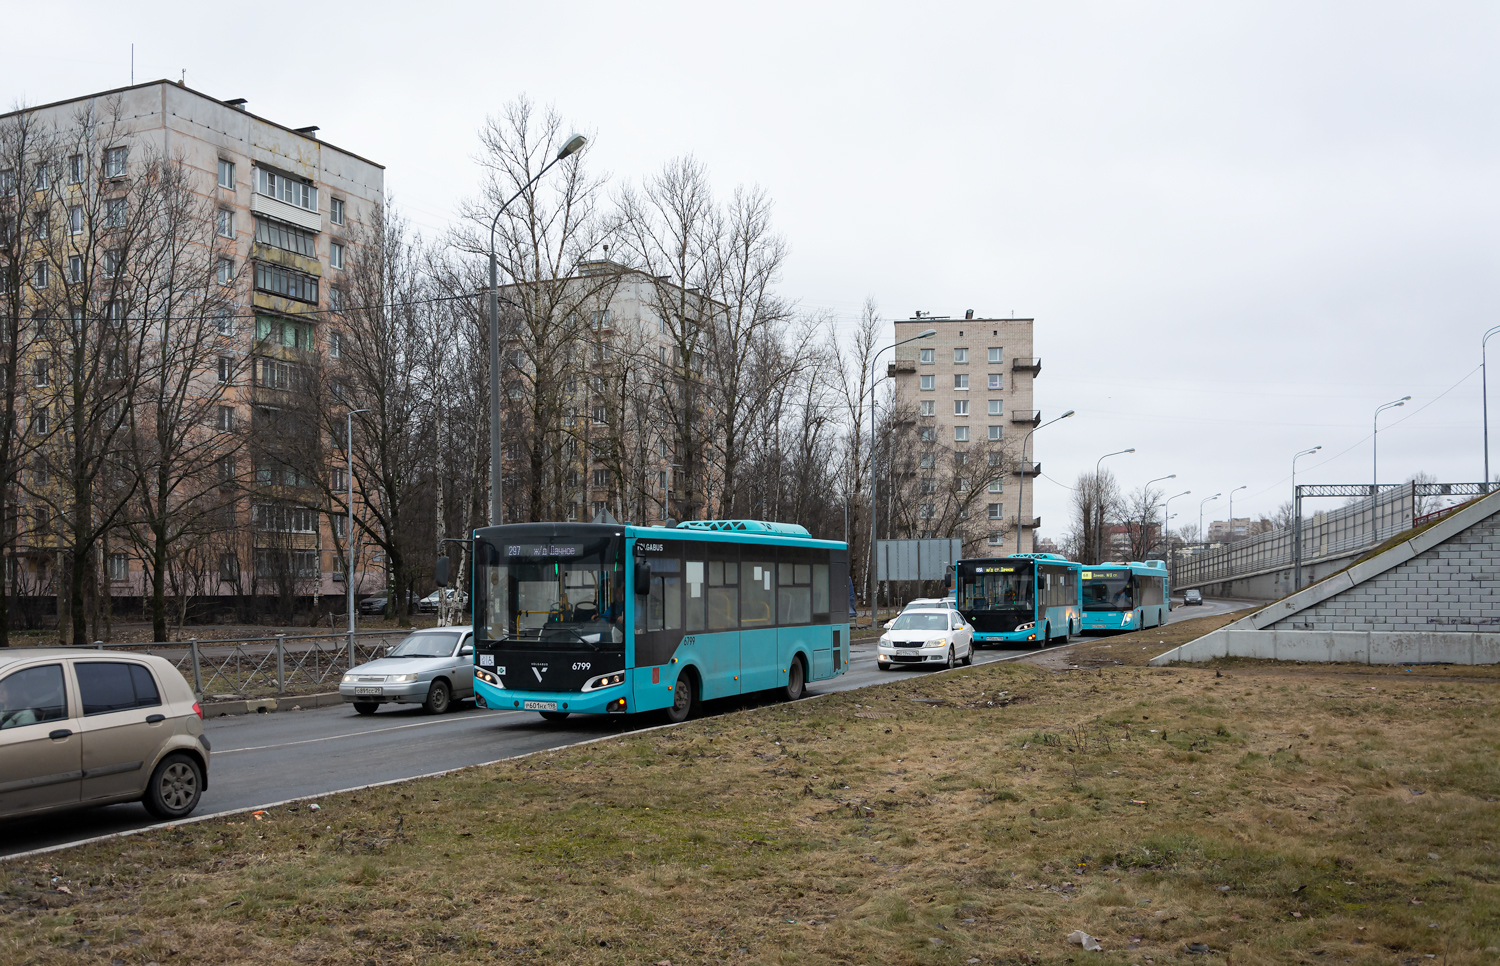 Saint Petersburg, Volgabus-4298.G4 (LNG) č. 6799